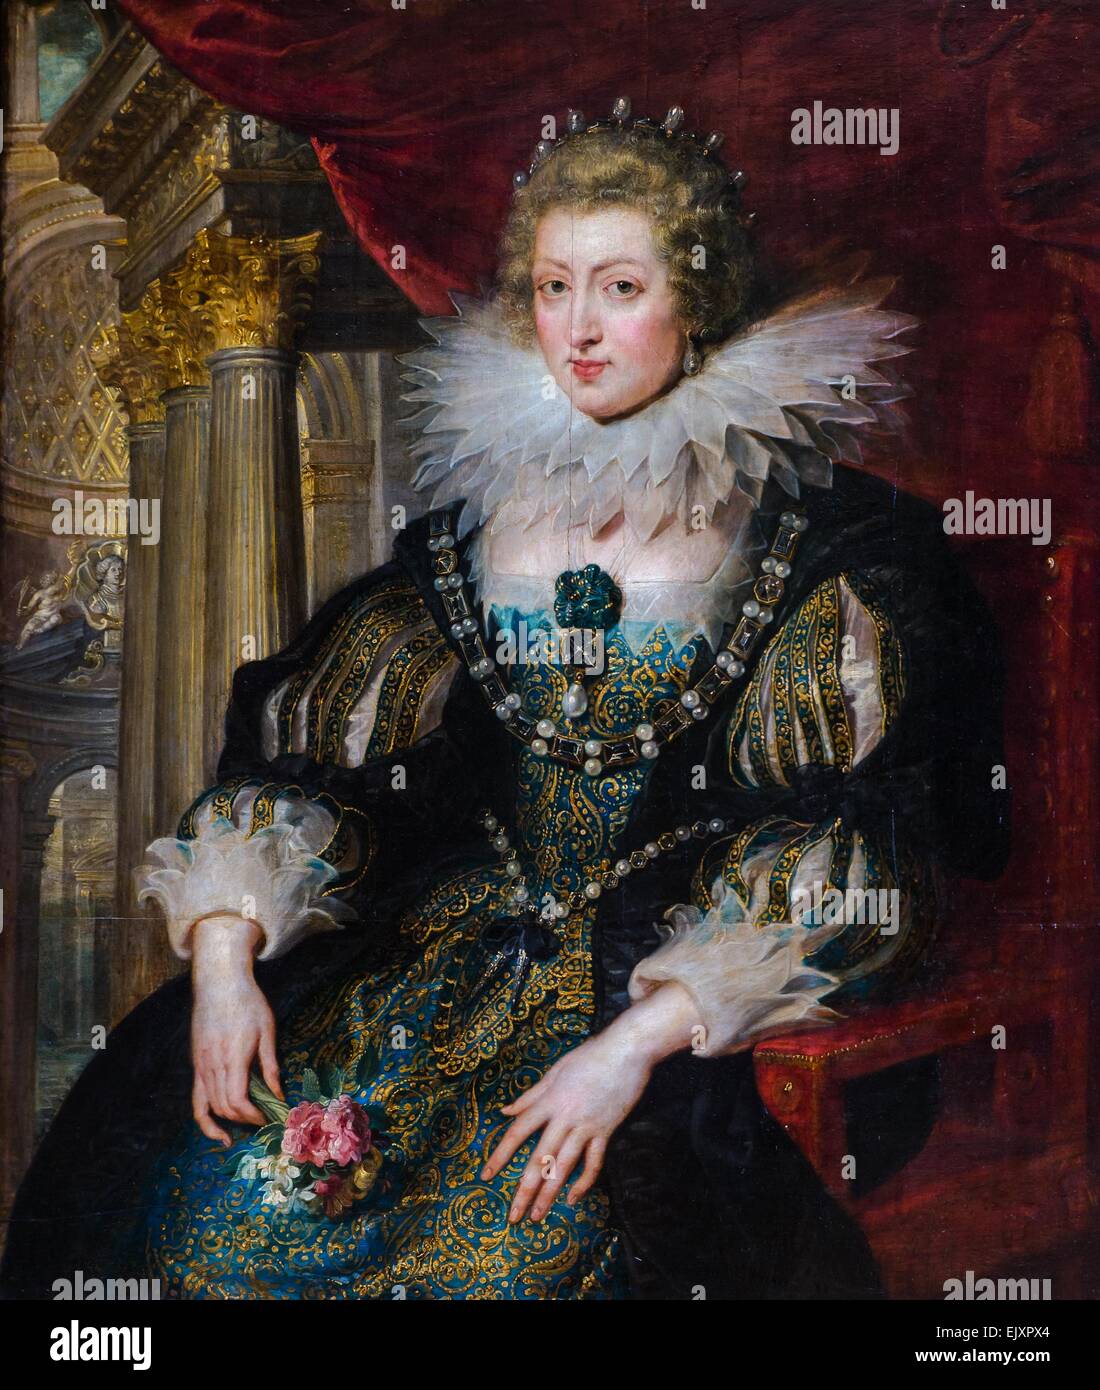 ActiveMuseum 0001957.jpg / Anne d'Autriche, reine consort du roi Louis XIII de France, mère de Louis XIV, ca 1620 - par Rubens Huile sur toile 26/09/2013 - 17e siècle / Collection / Musée actif Banque D'Images